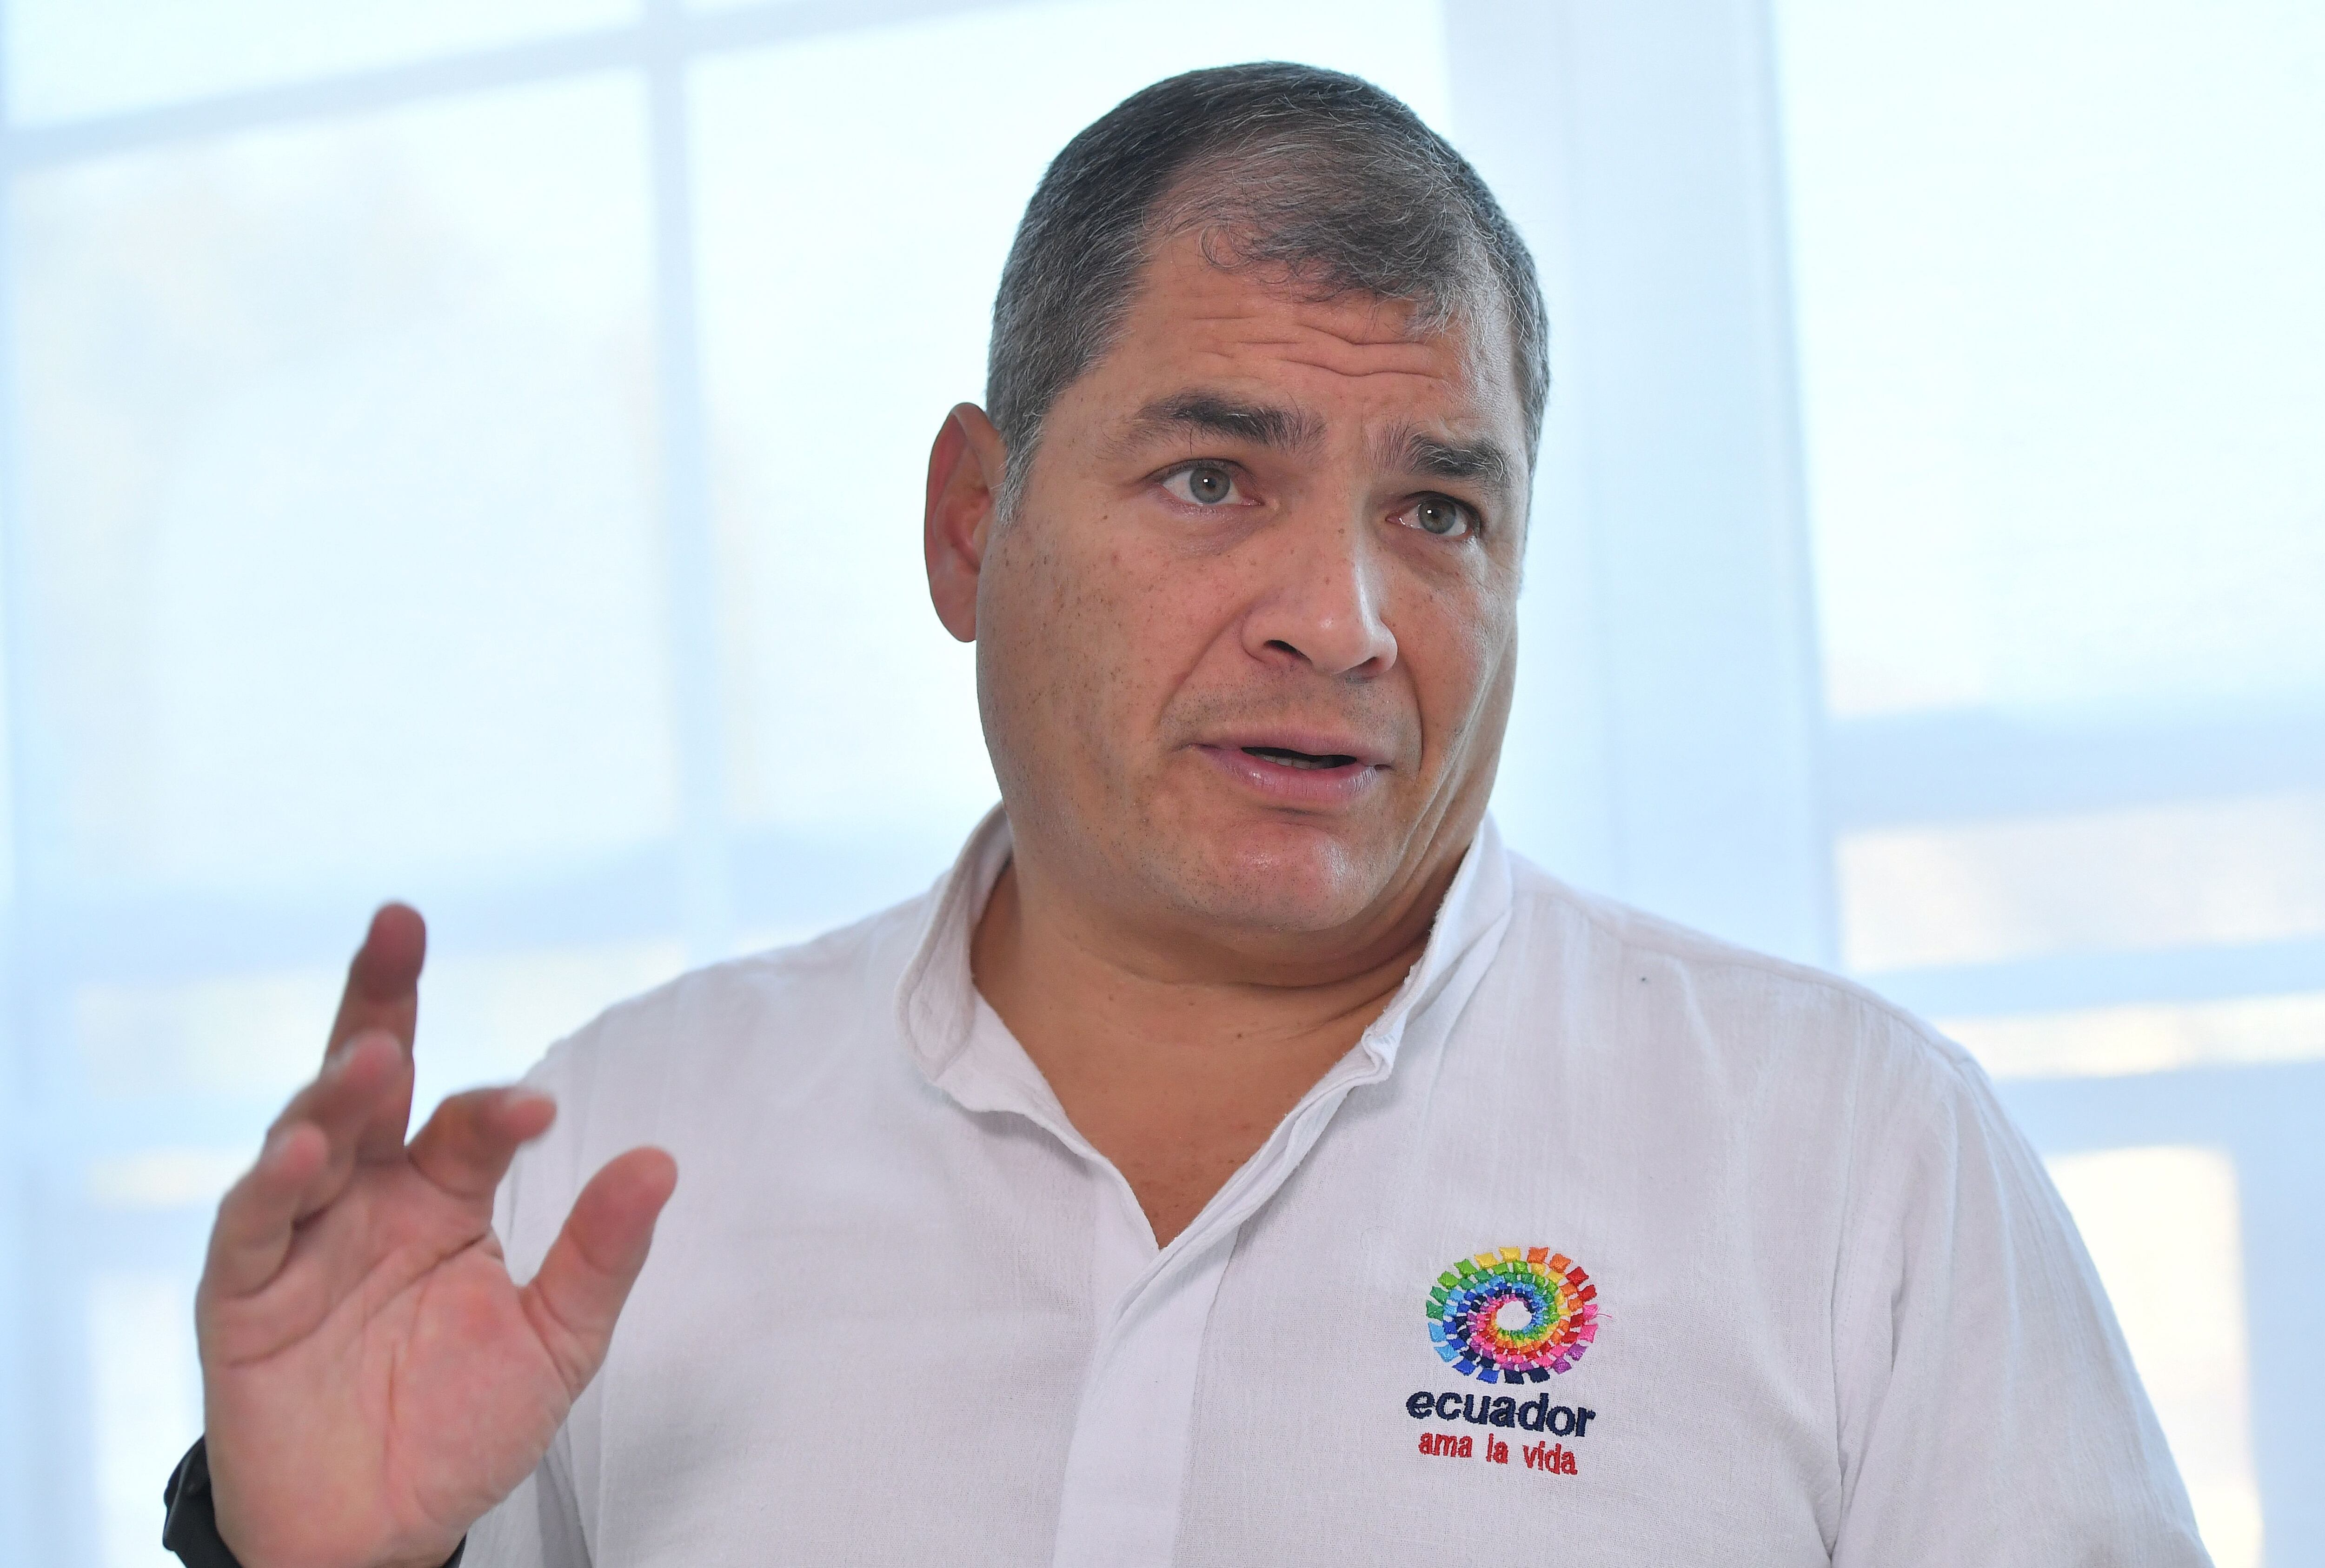 El ex presidente ecuatoriano Rafael Correa se pronunció sobre el arresto de Jorge Glas y dijo que 